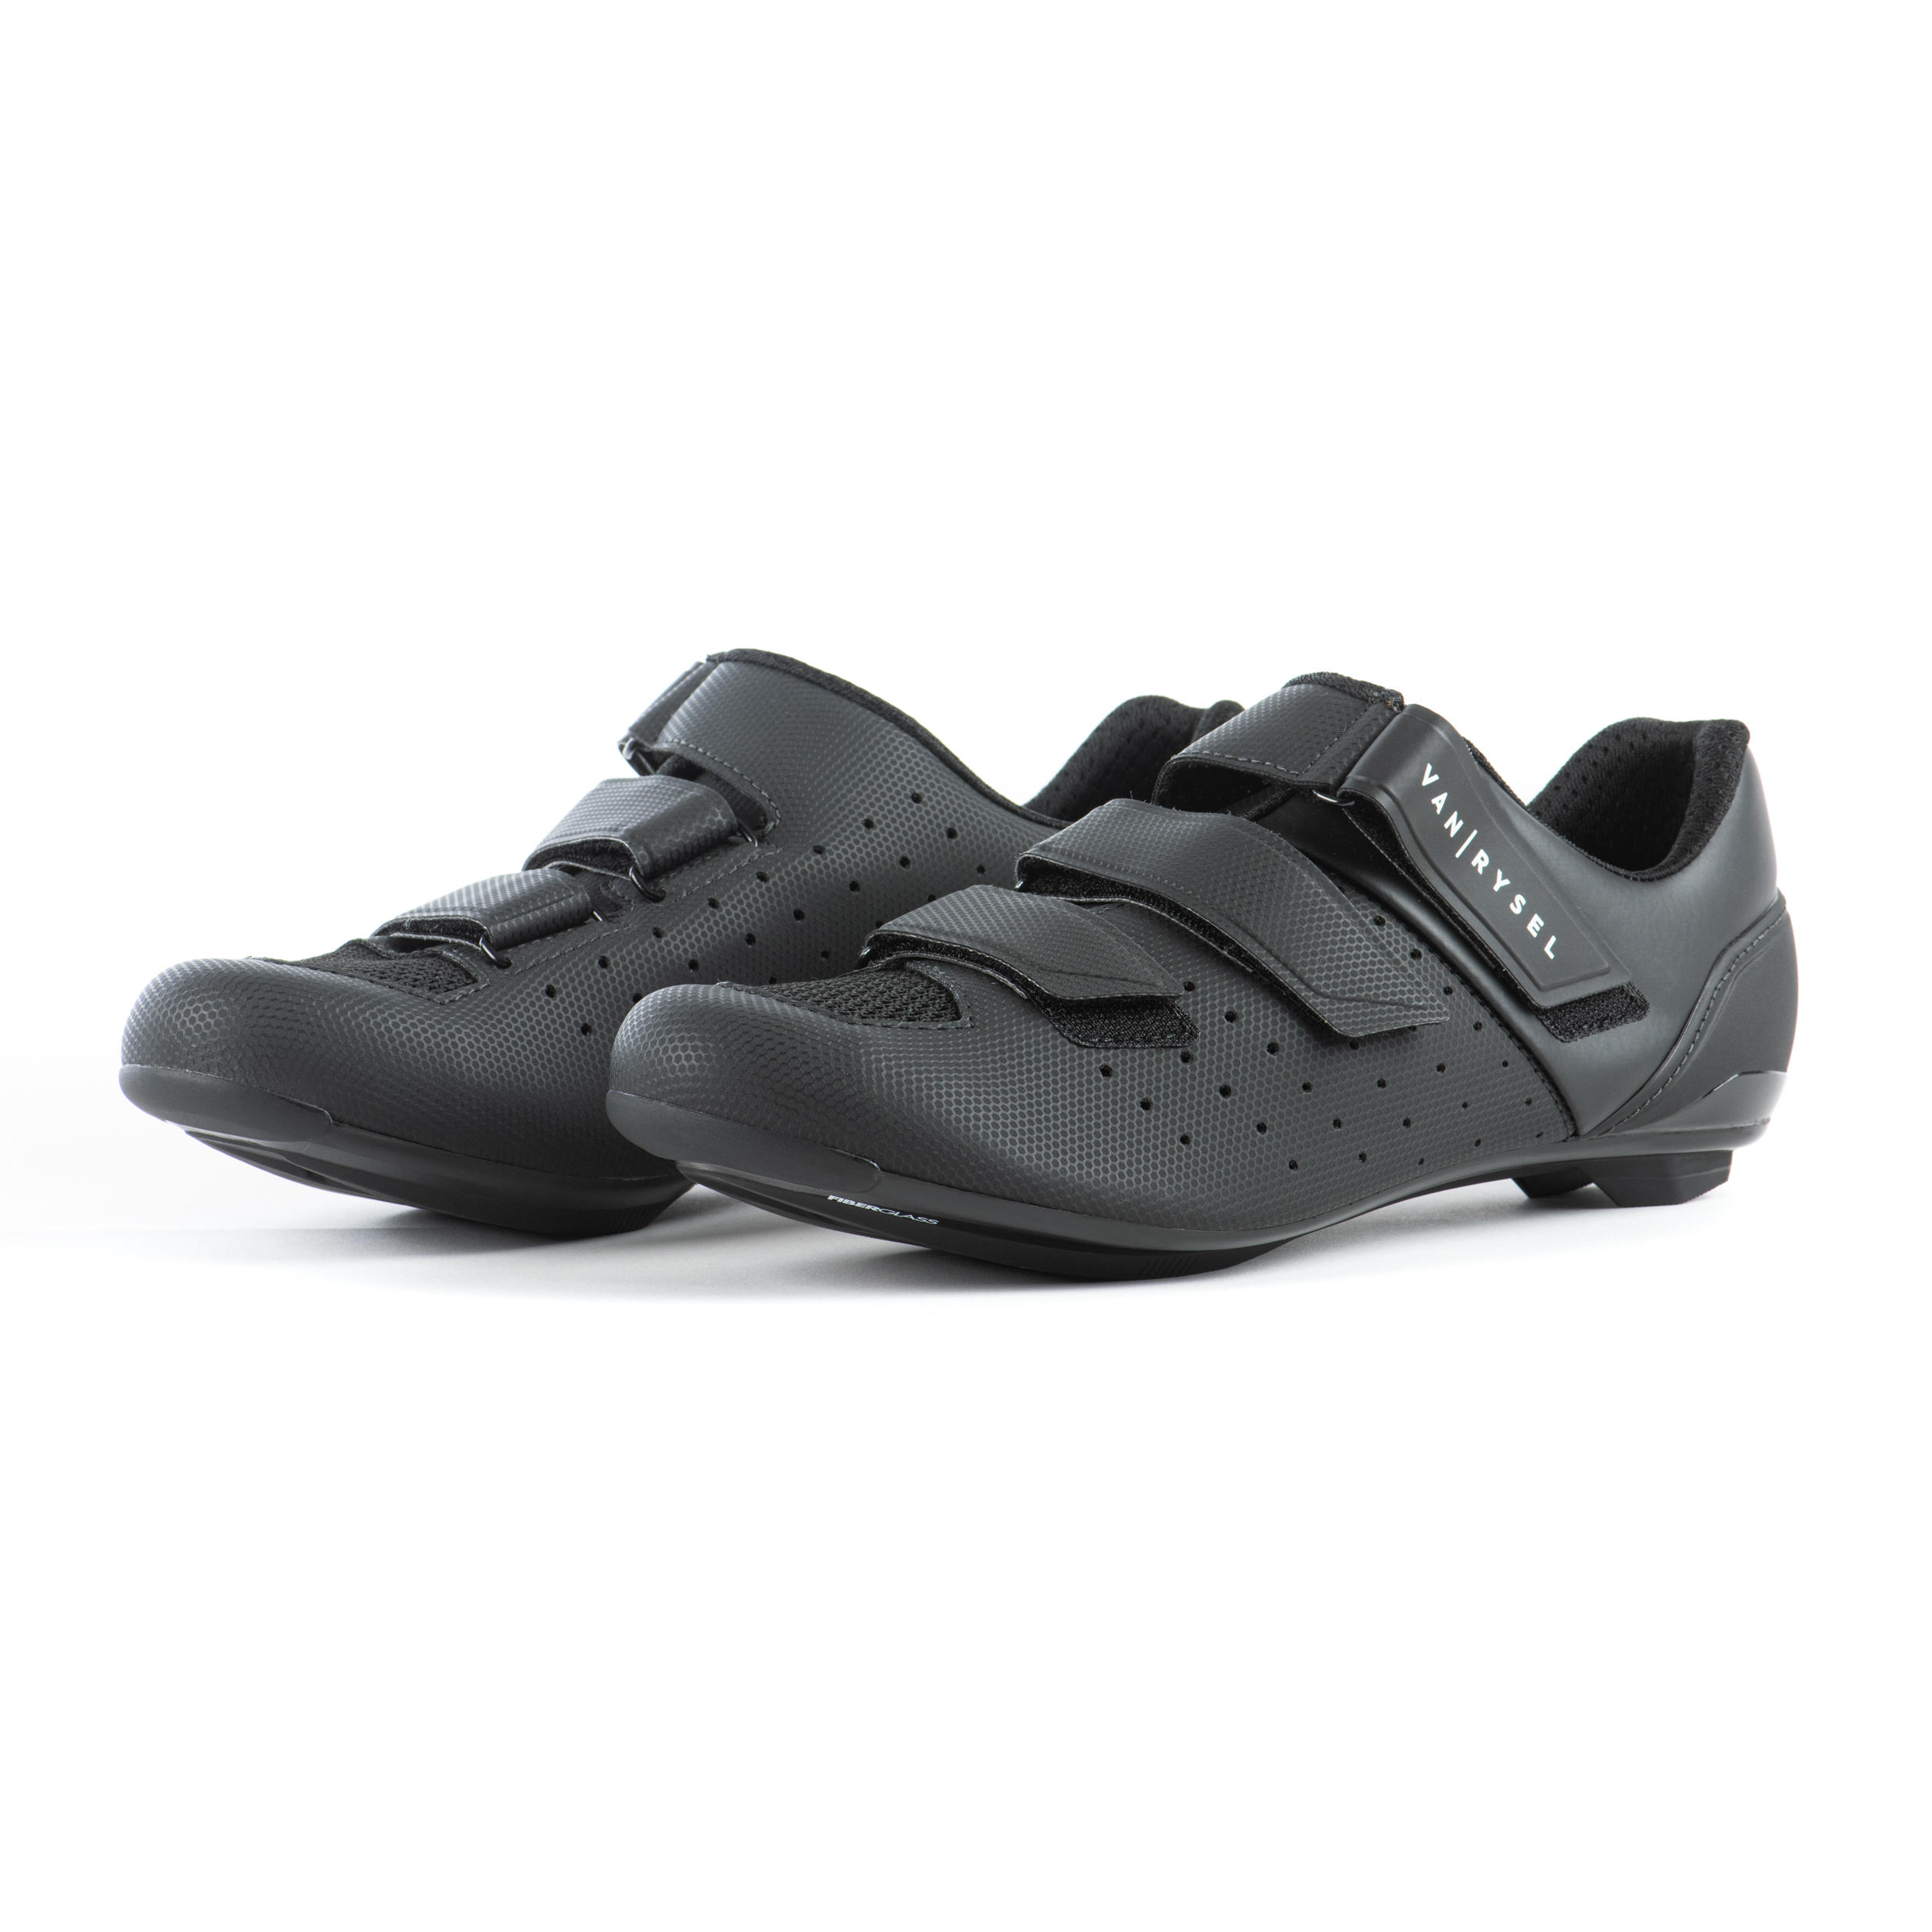 Van Rysel Sport Cycling Shoes - Black